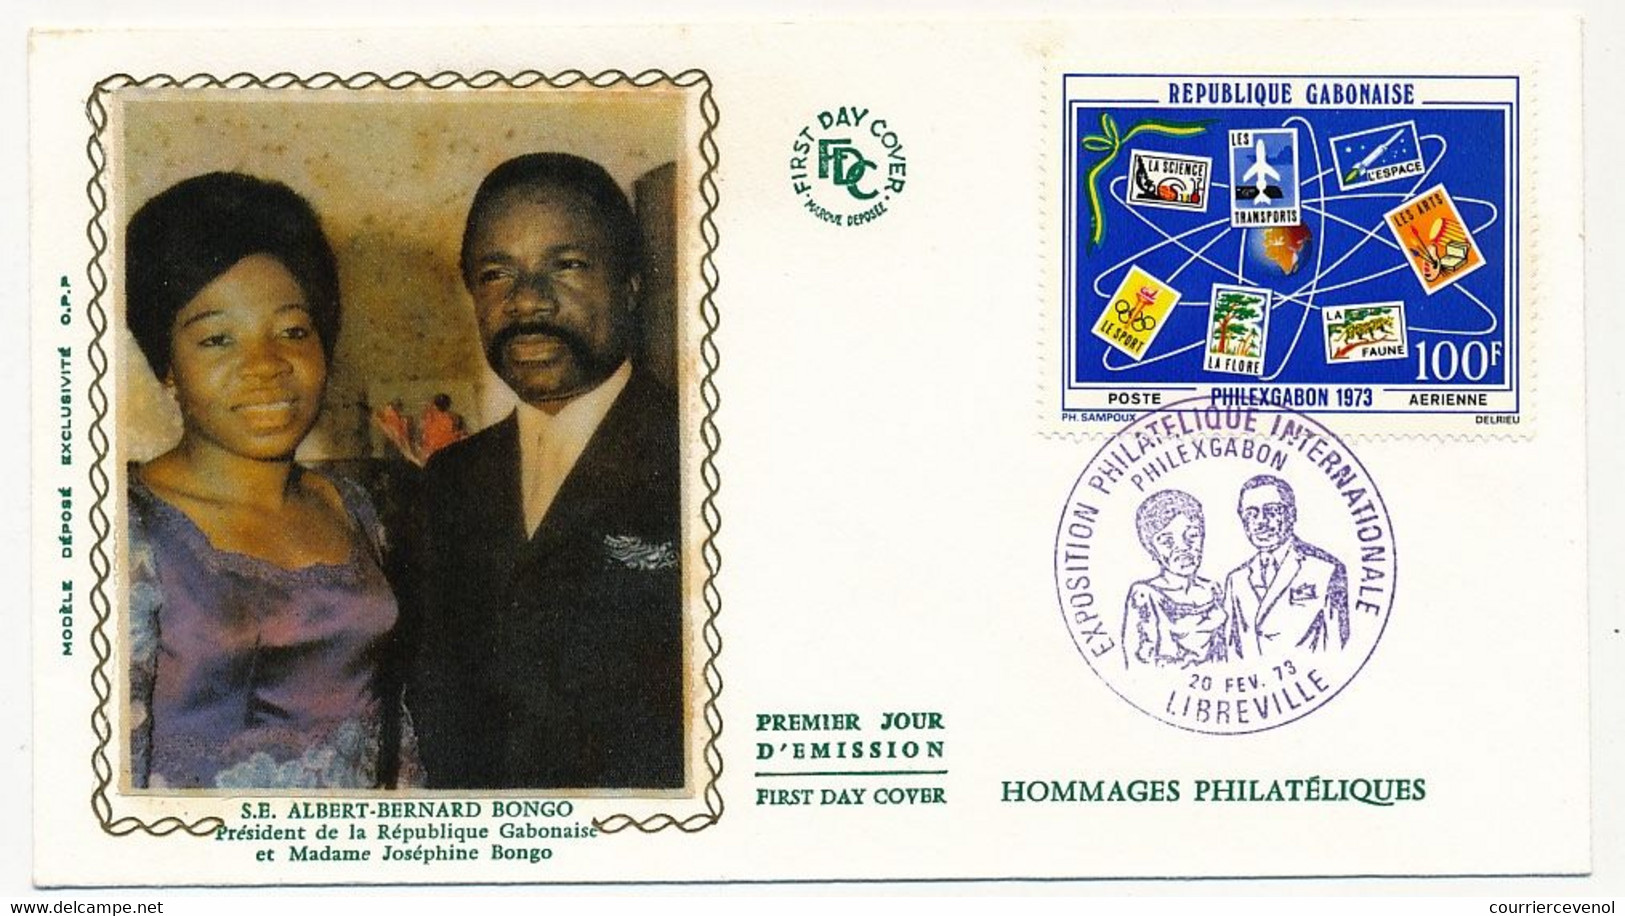 GABON => FDC Soie => 100F Philexgabon - Expo Philatélique Internationale - 20 Oct. 1973 - Libreville - Gabon